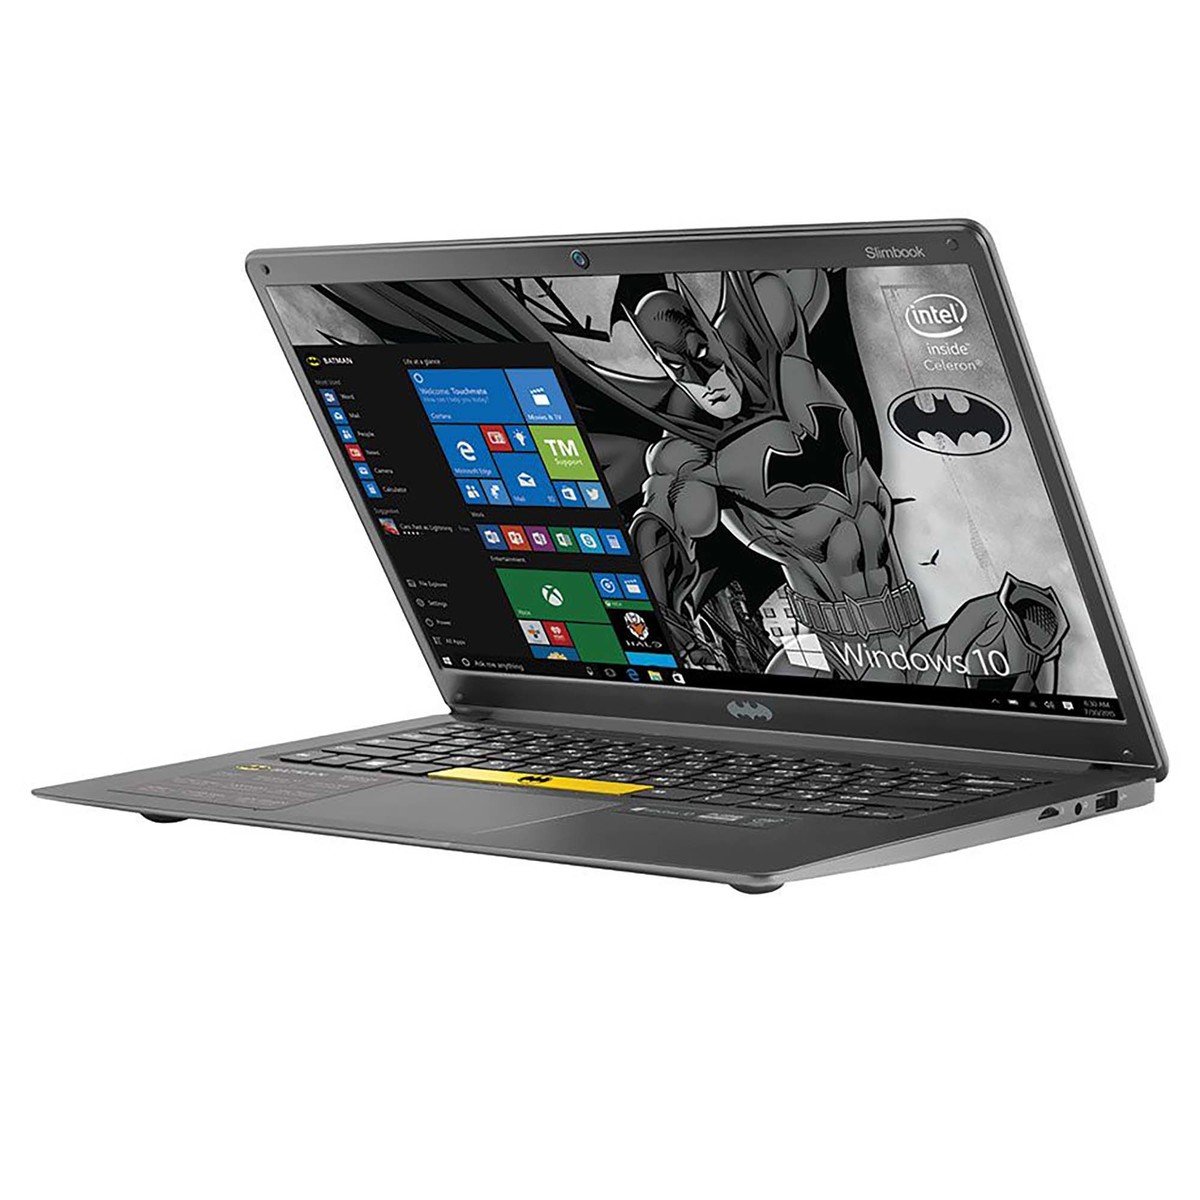 Touchmate Batman 14"  Notebook,Intel Celeron N3350 2.4 GHz Processor,64GB Internal, 4GB DDR3 RAM,Black